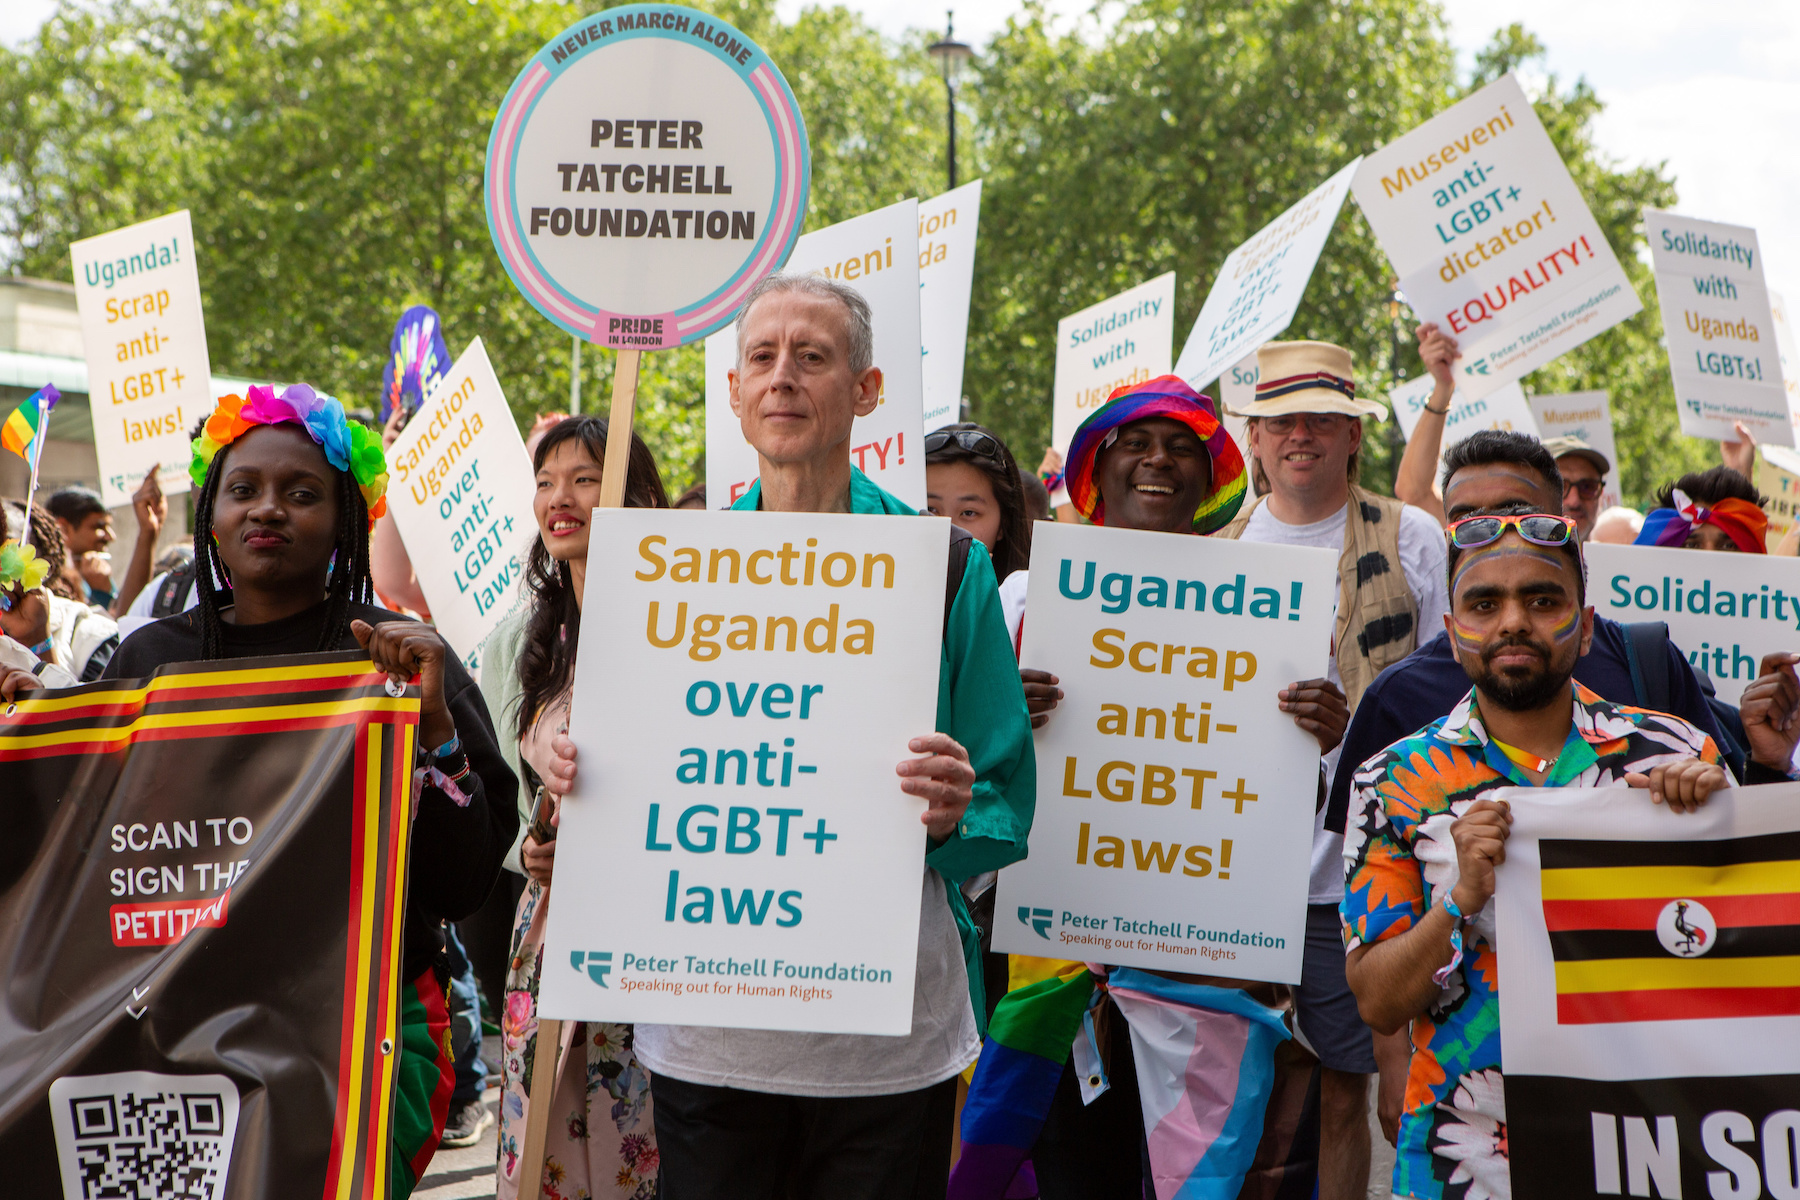 UK LGBTQ activists hold placards opposing Uganda's anti LGBTQ laws  